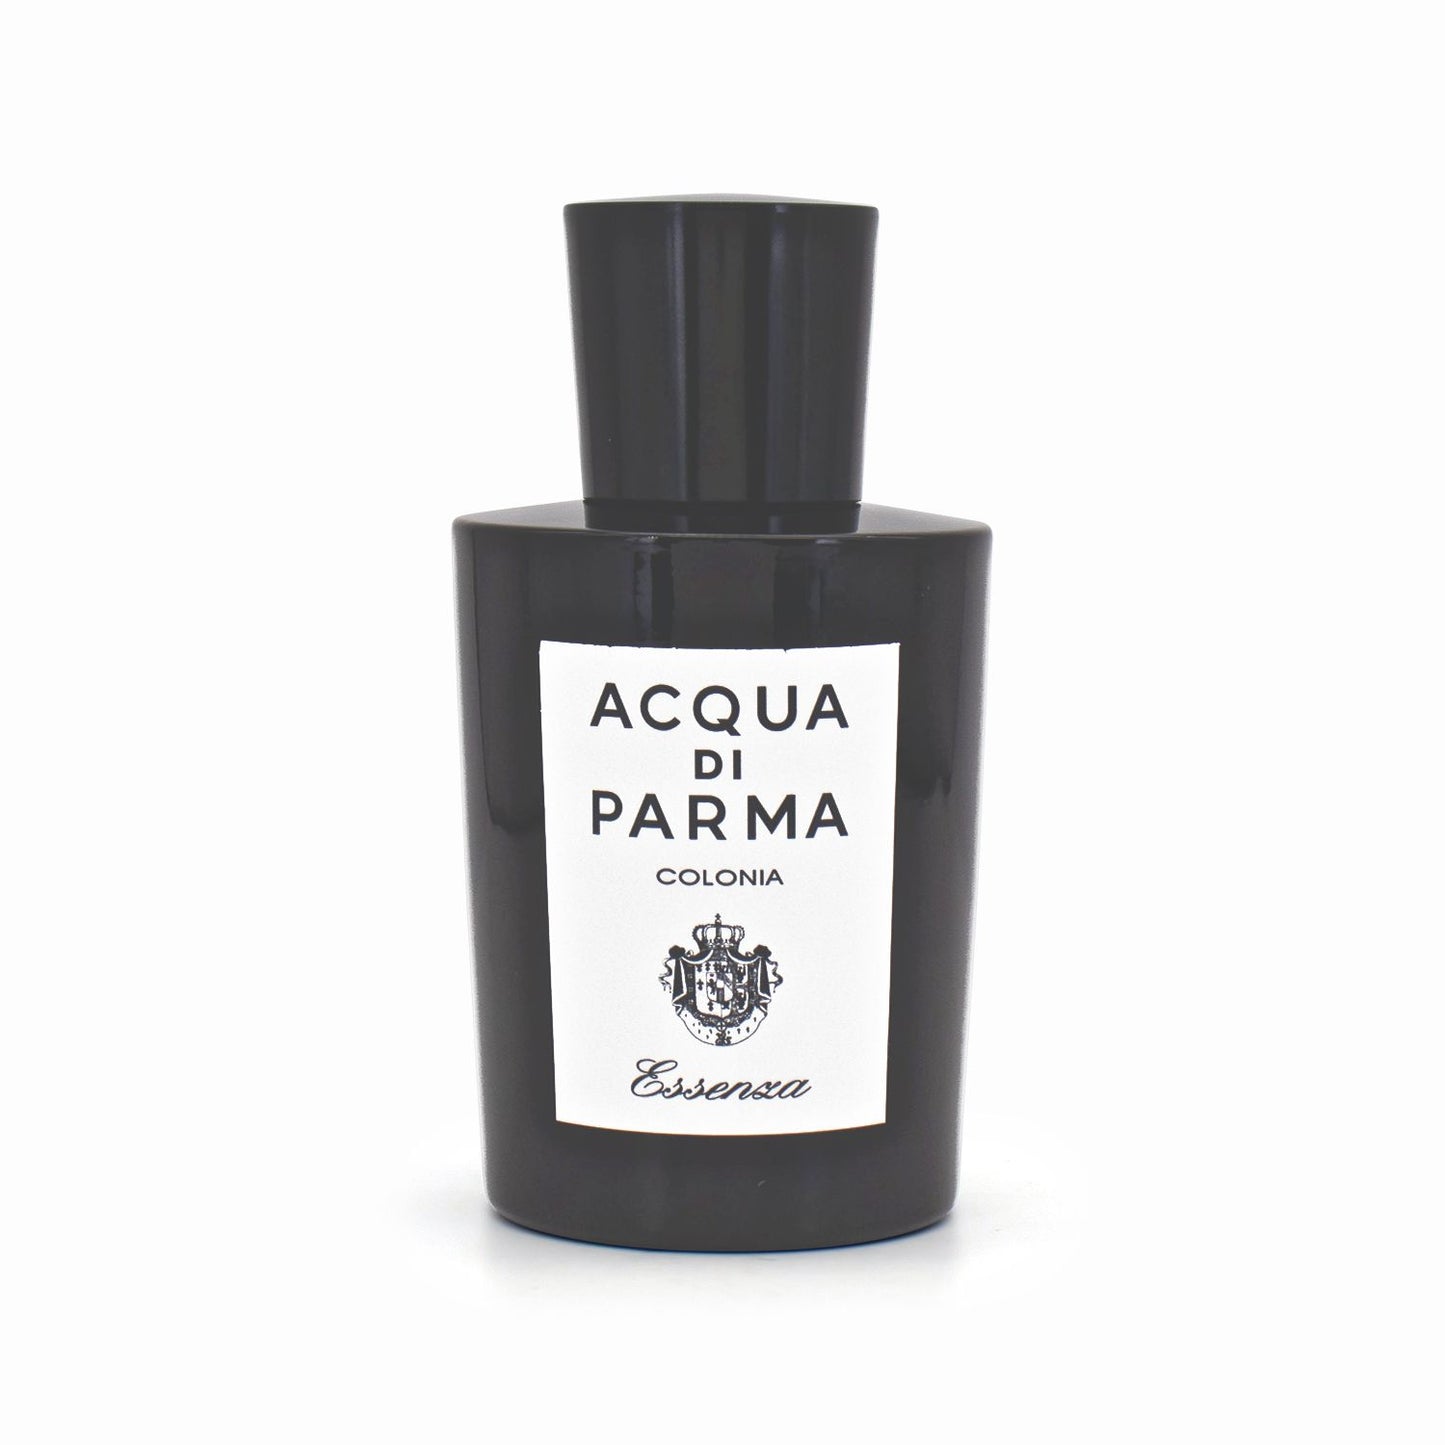 Acqua Di Parma Colonia Essenza Eau de Cologne Natural Spray 100ml - Imperfect Box